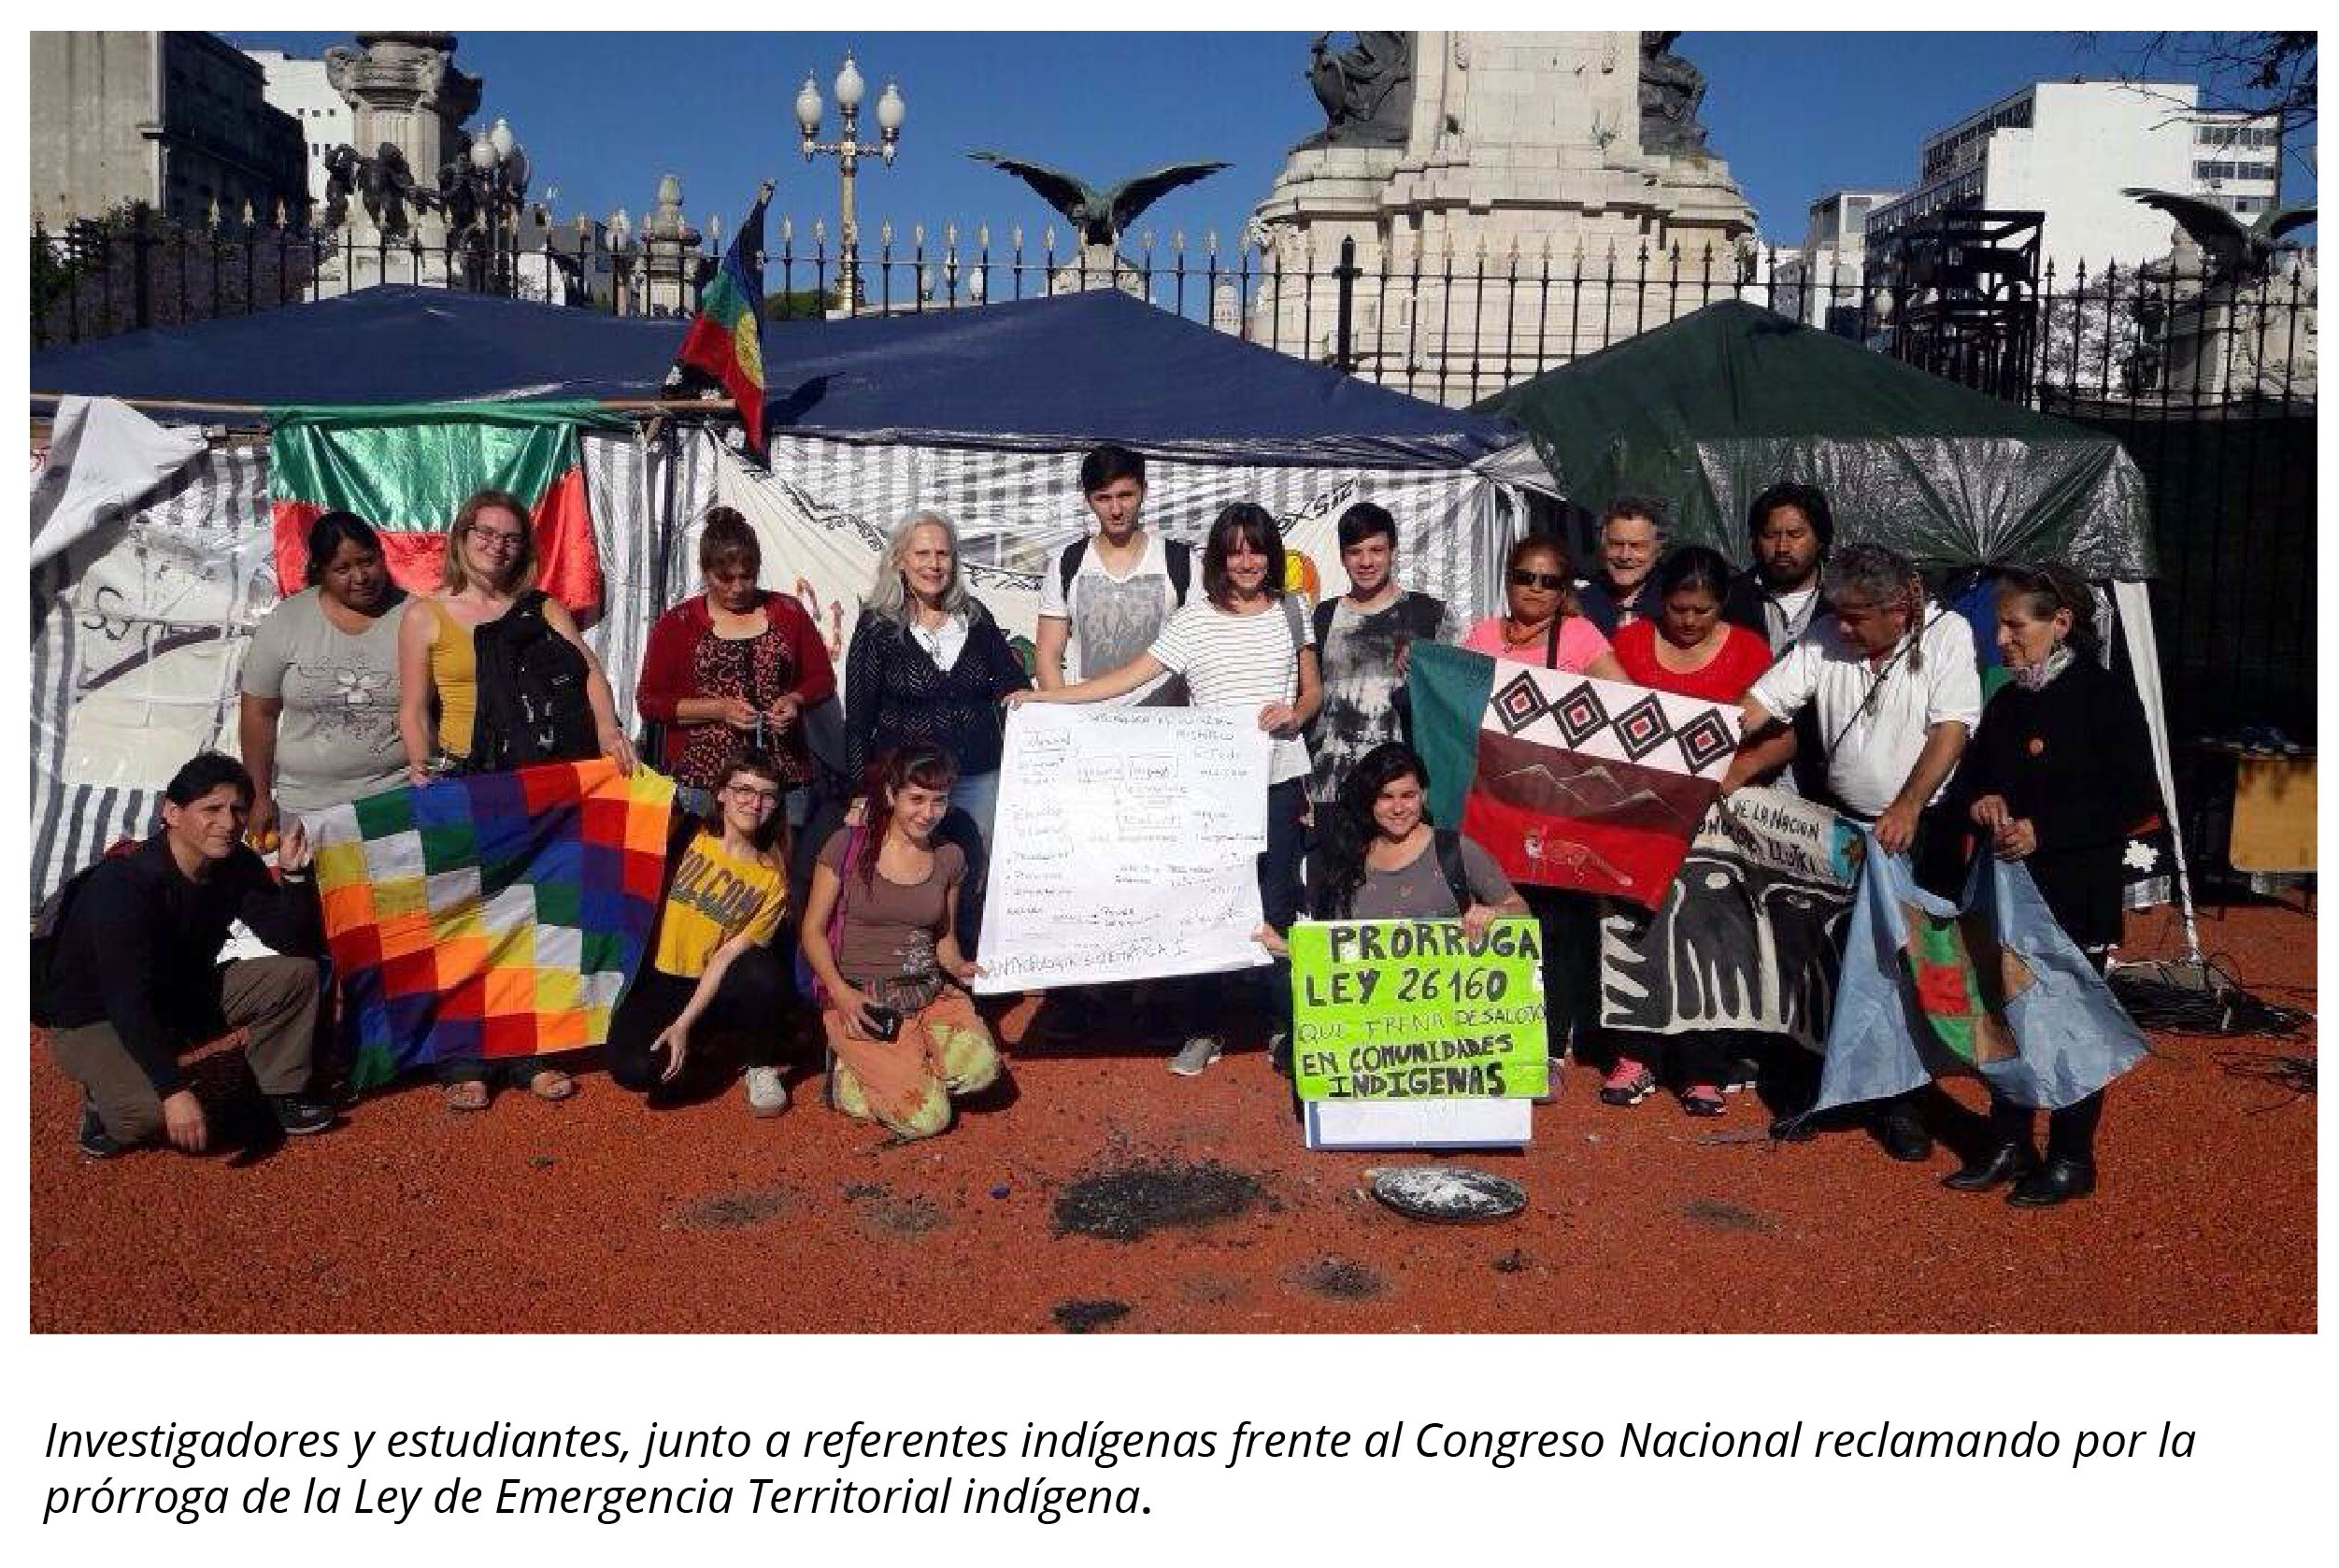 La imagen muestra investigadores y estudiantes junto a referentes indígenas frente al Consejo Nacional reclamando por la prórroga de la Ley de Emergencia Territorial indígena.